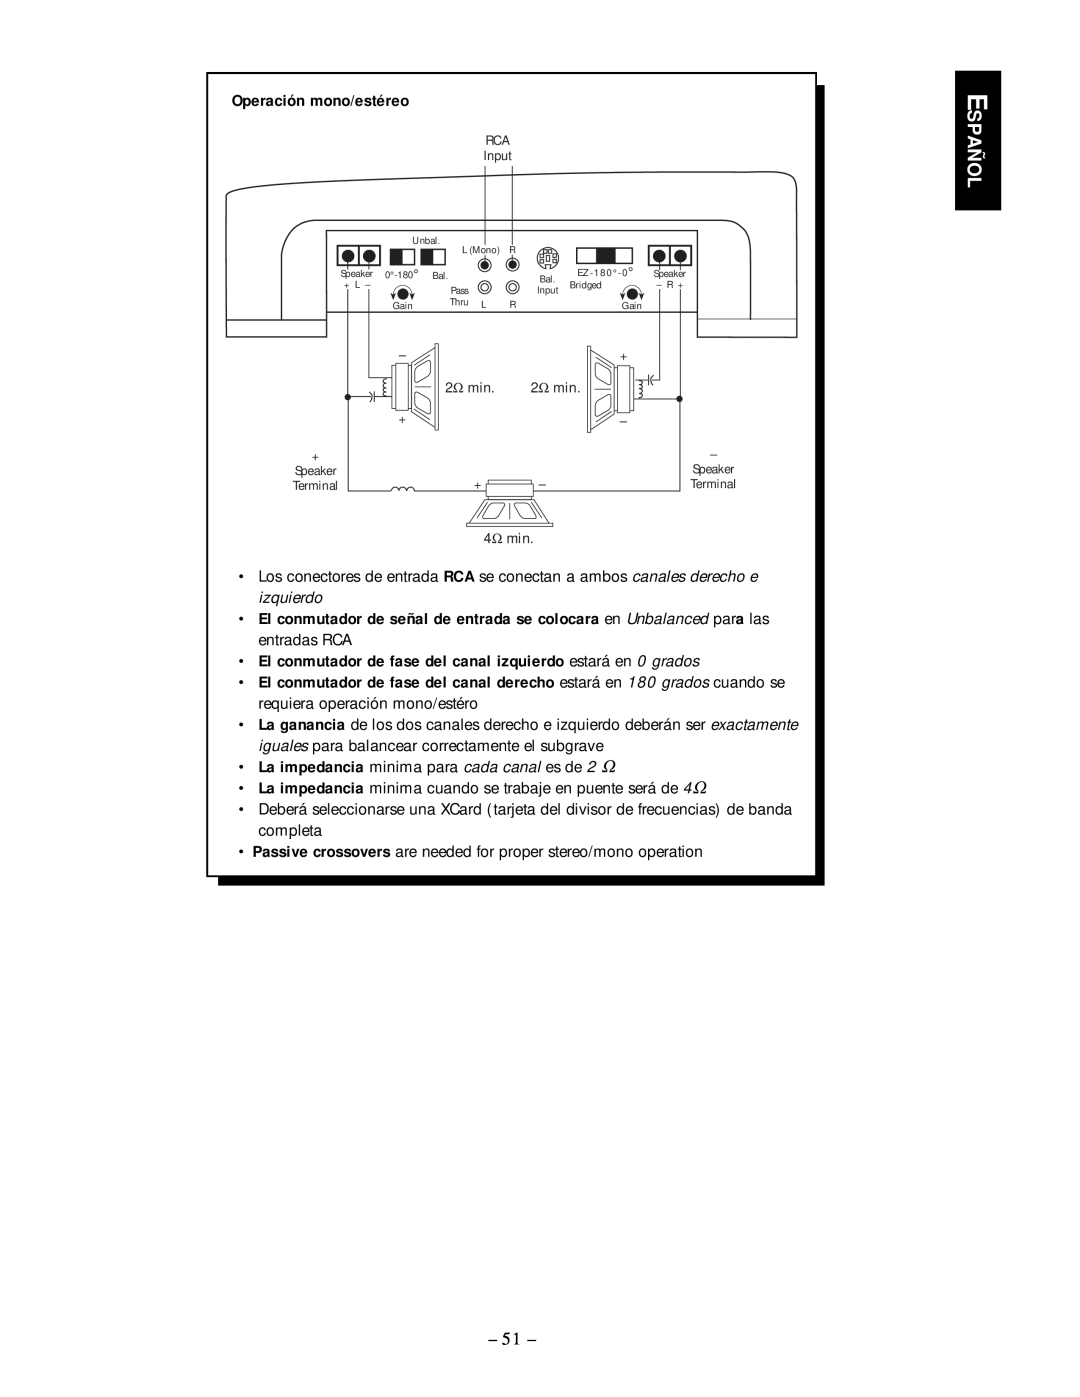 Rockford Fosgate 250.2 manual Español, Operación mono/estéreo 